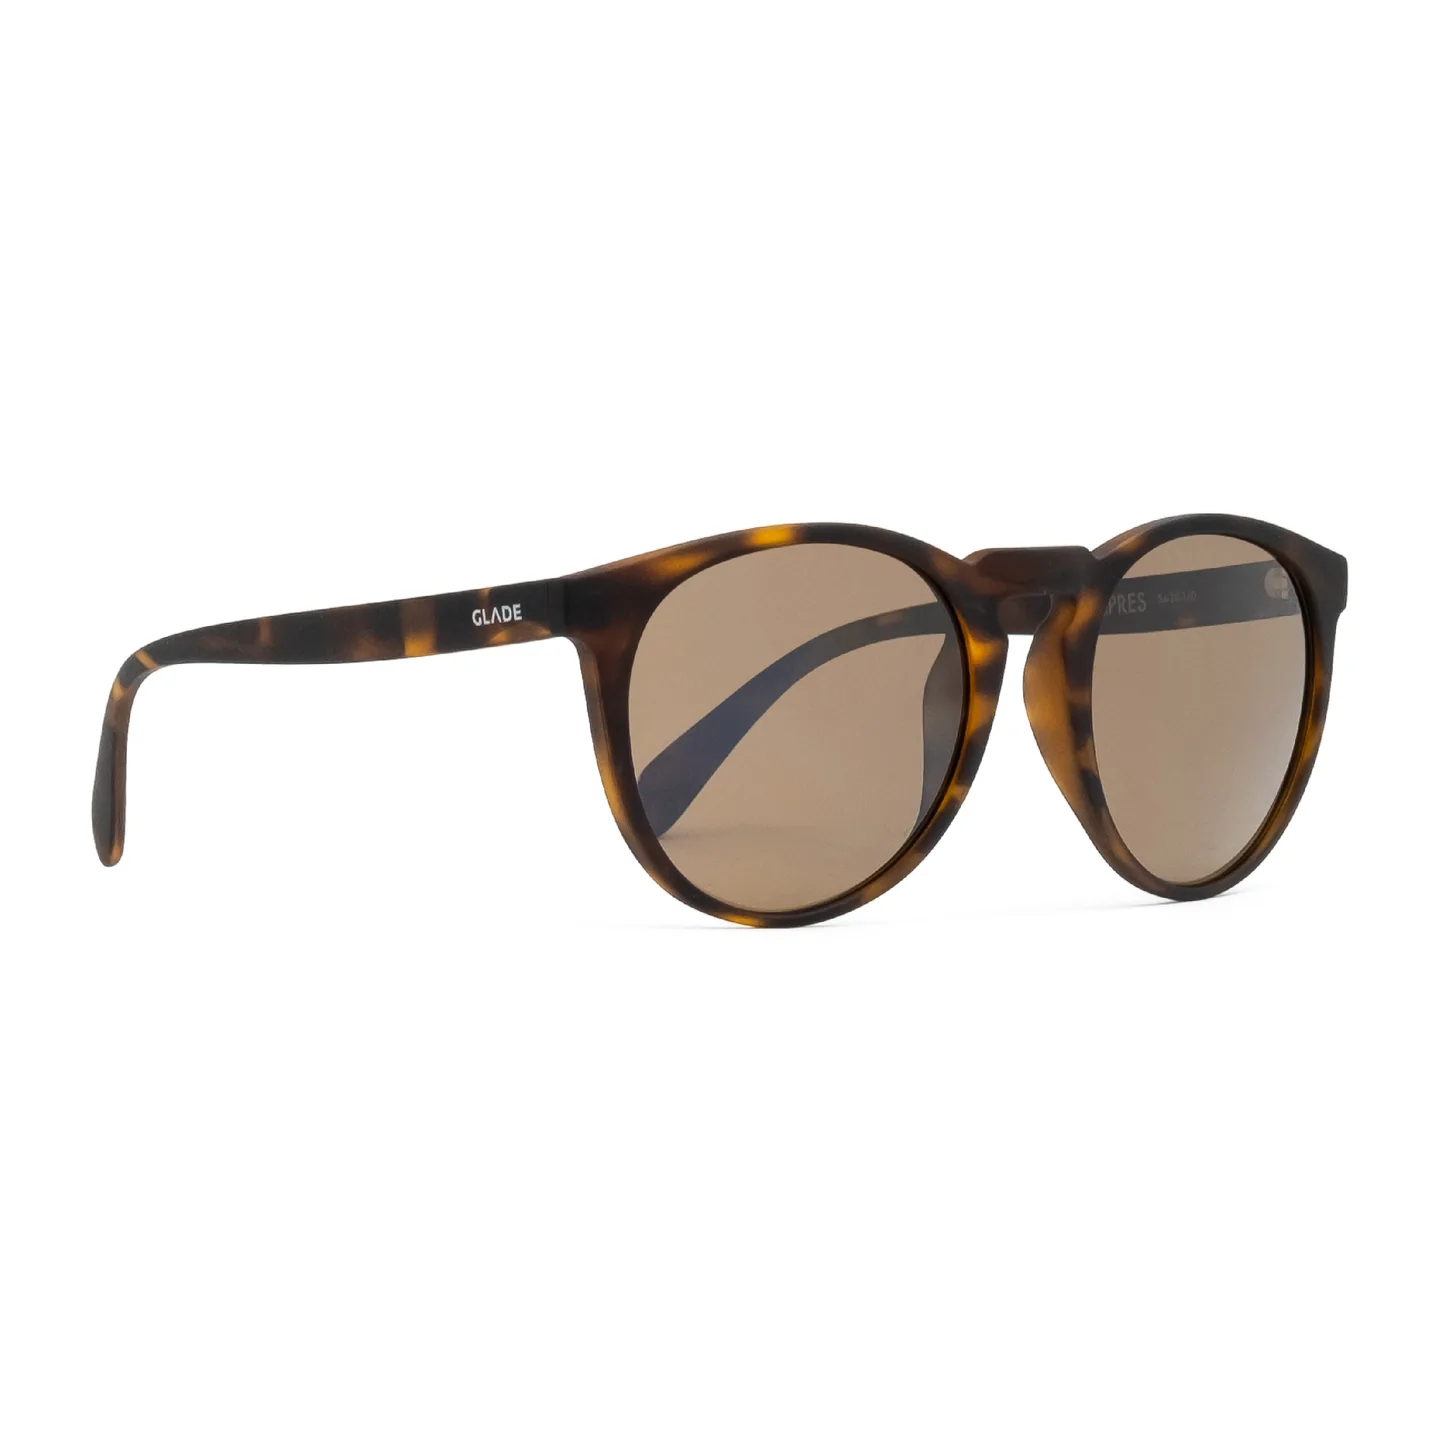 Luke Koppa reviews the Glade Apres Sunglasses for BLISTER